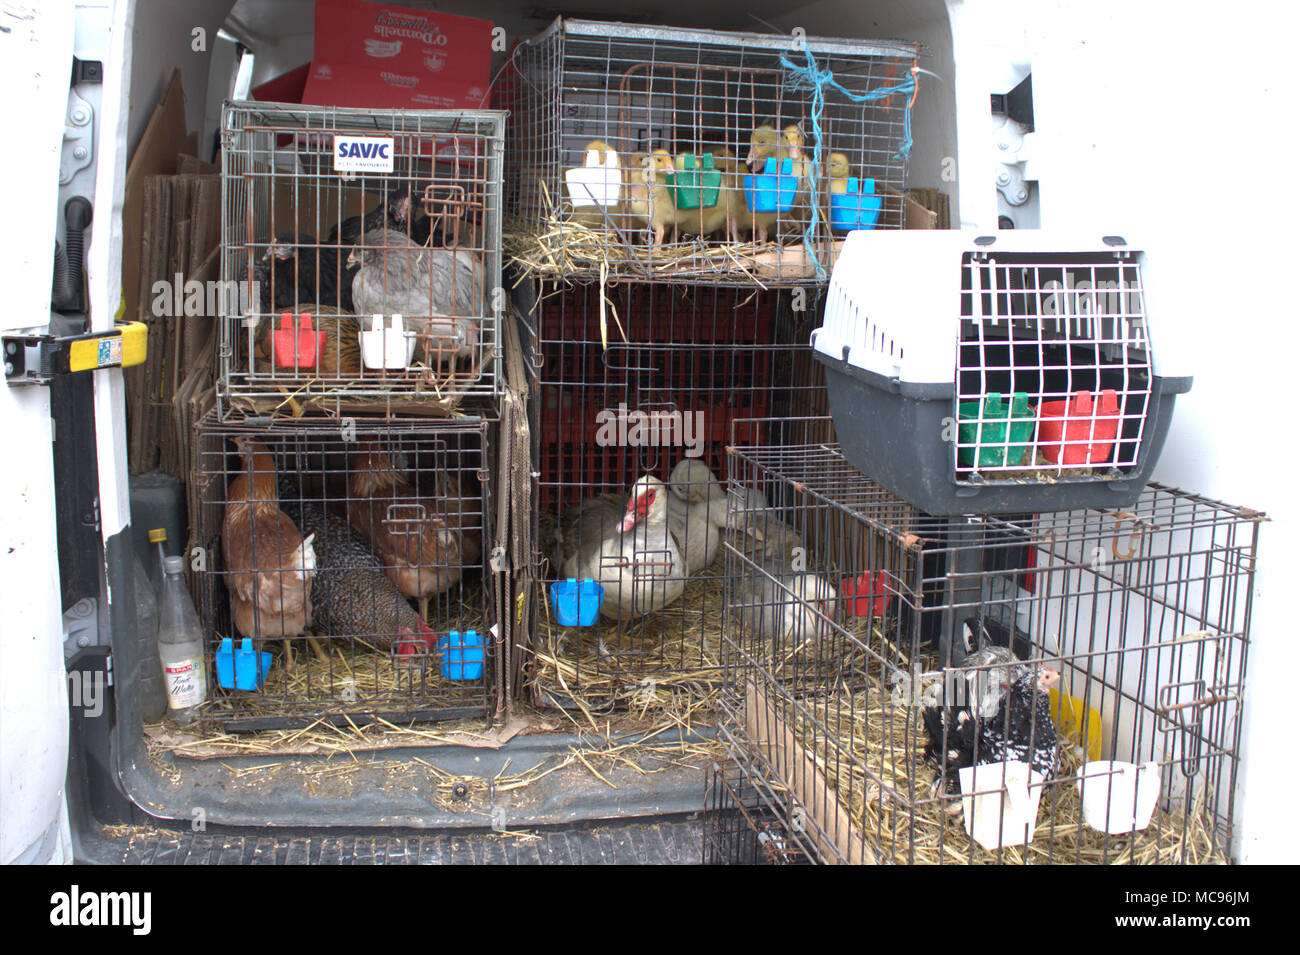 Anatroccoli, polli, anatre tutto il pollame per la vendita in un mercato alimentare. Foto Stock